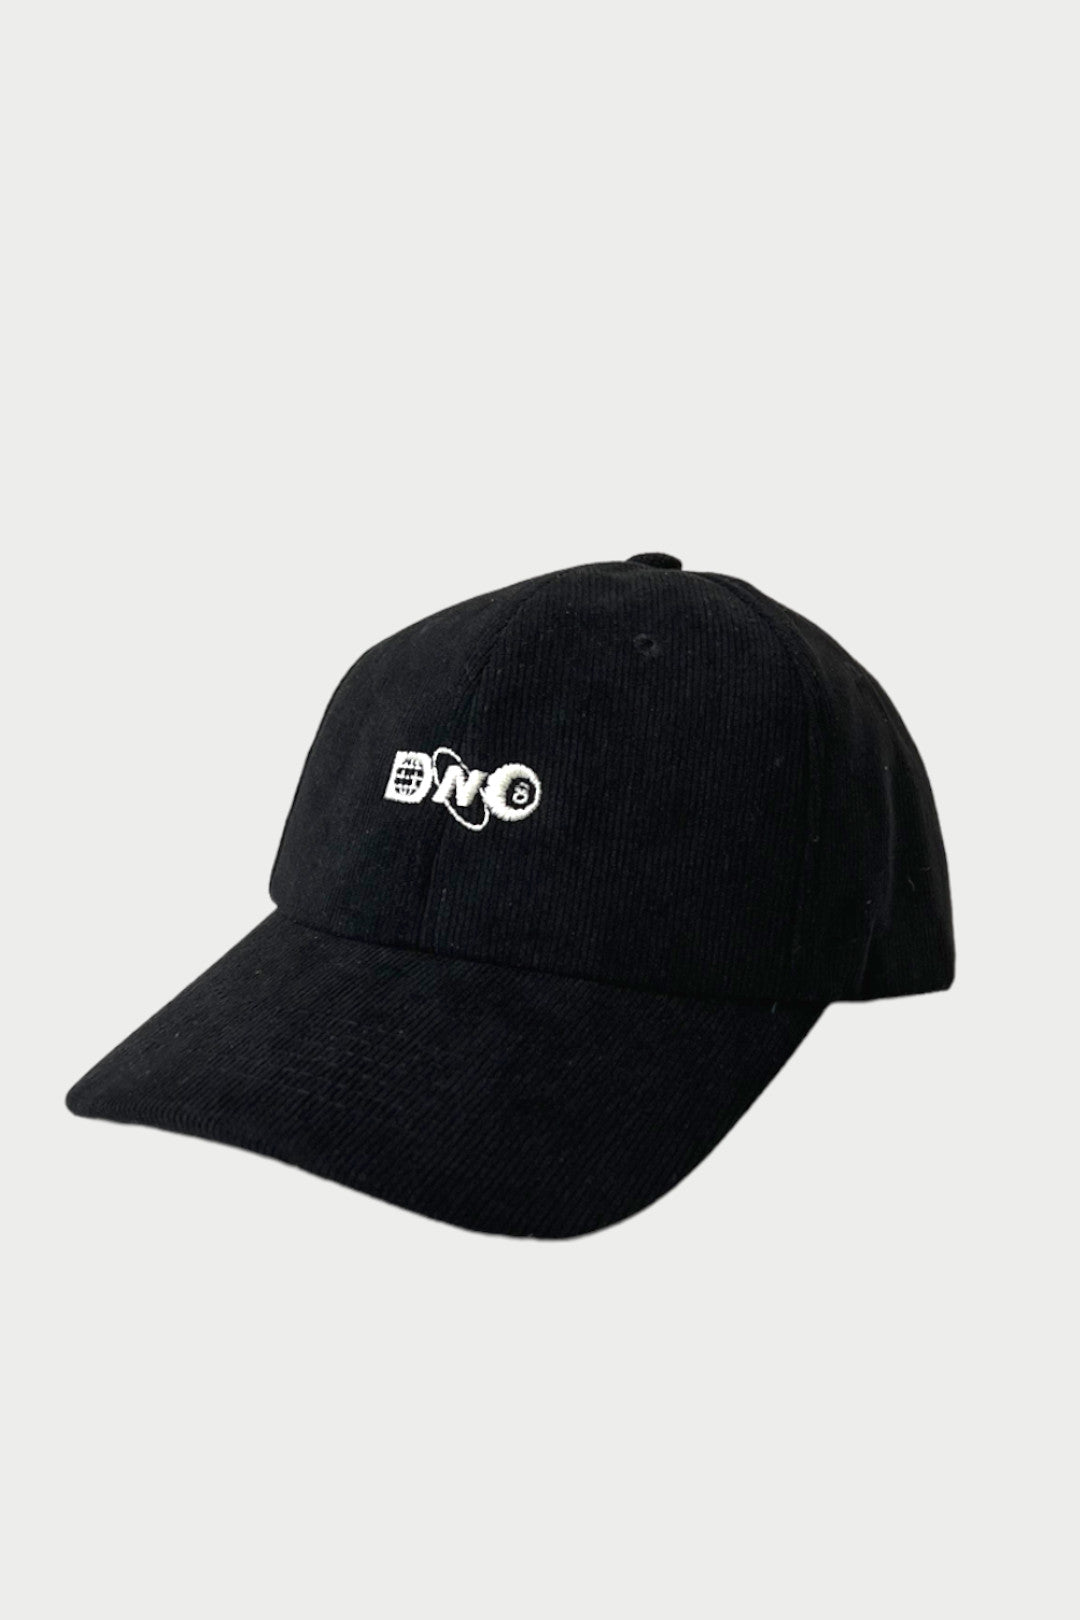 DNO Creator Hat